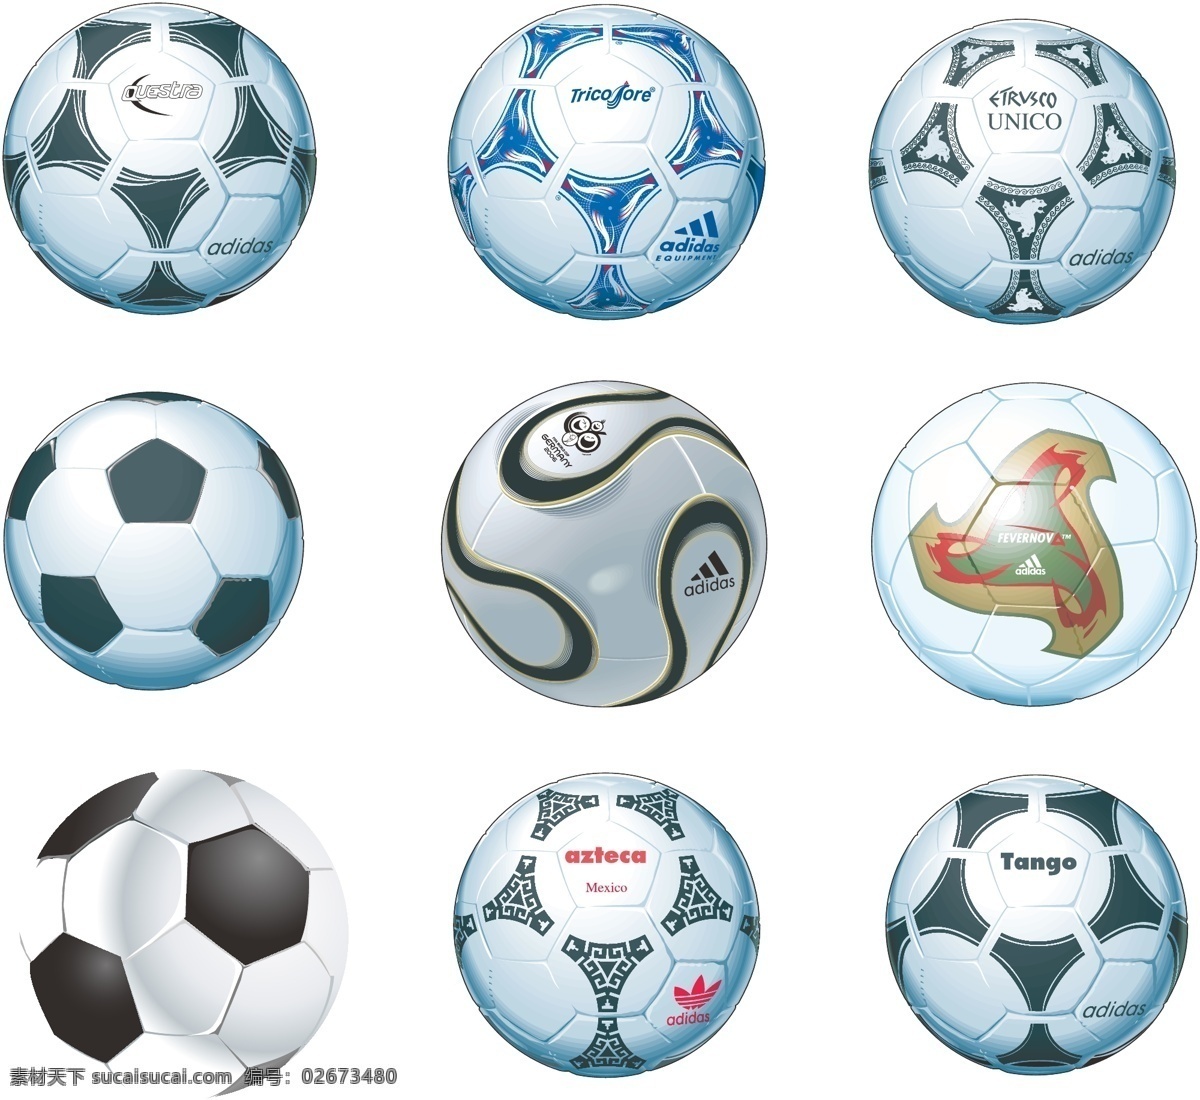 格式 超现实 专业 足球 矢量 9免费下载 球类 足球运动 向量 矢量图 日常生活